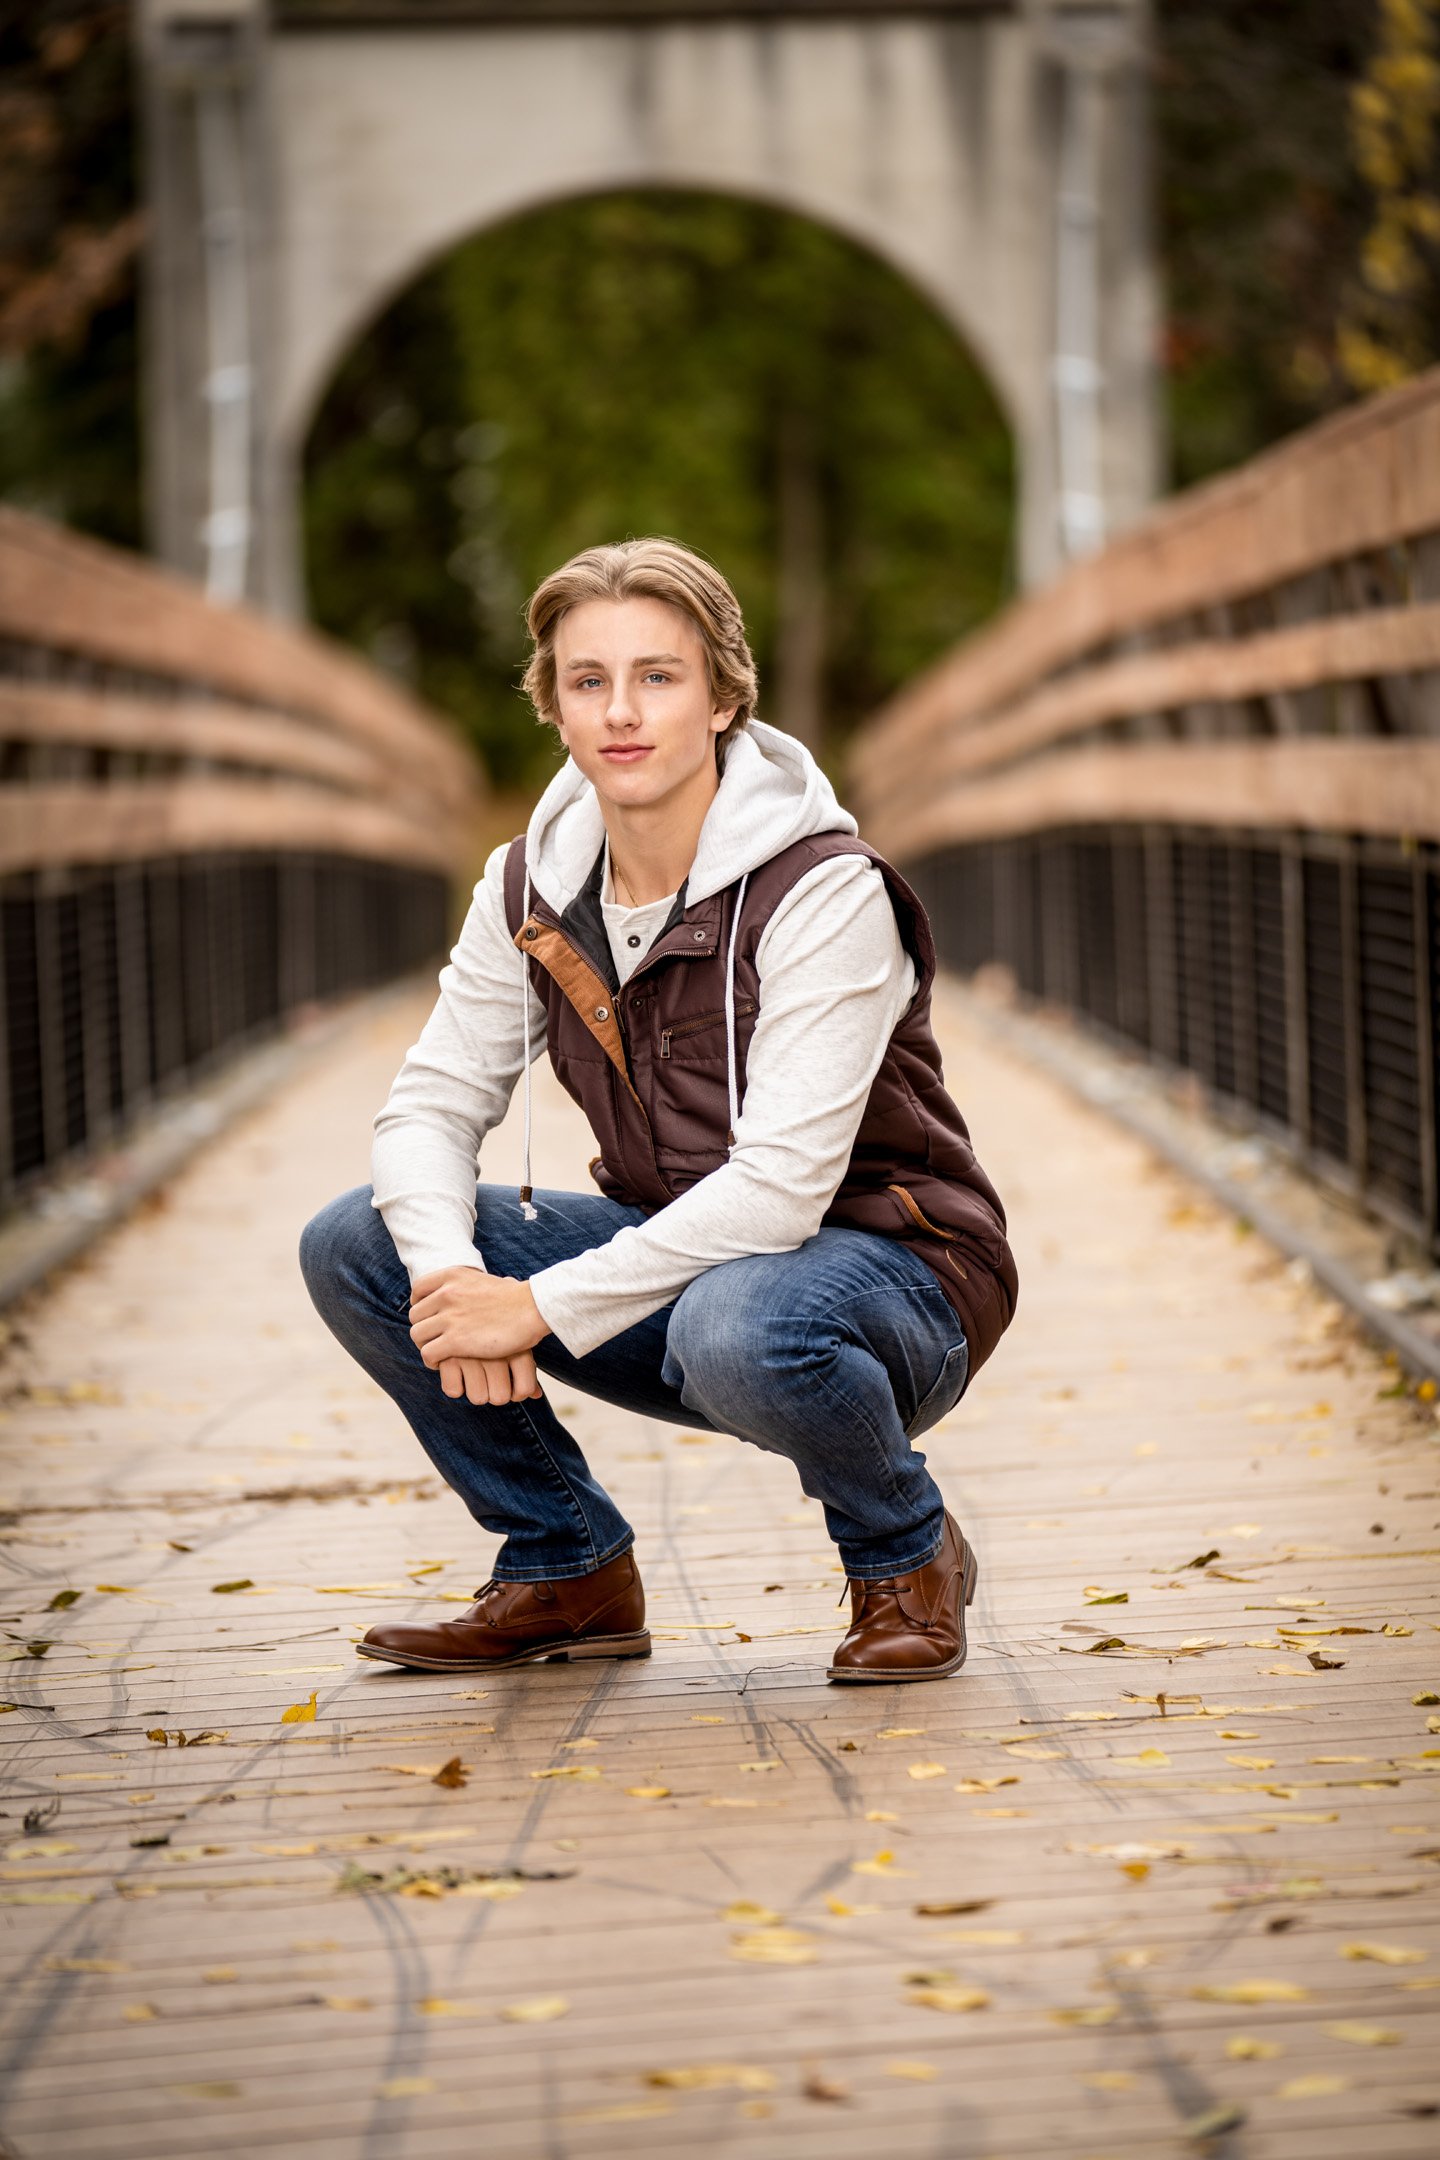 Kneeling down on bridge in fall weather senior boy portrait